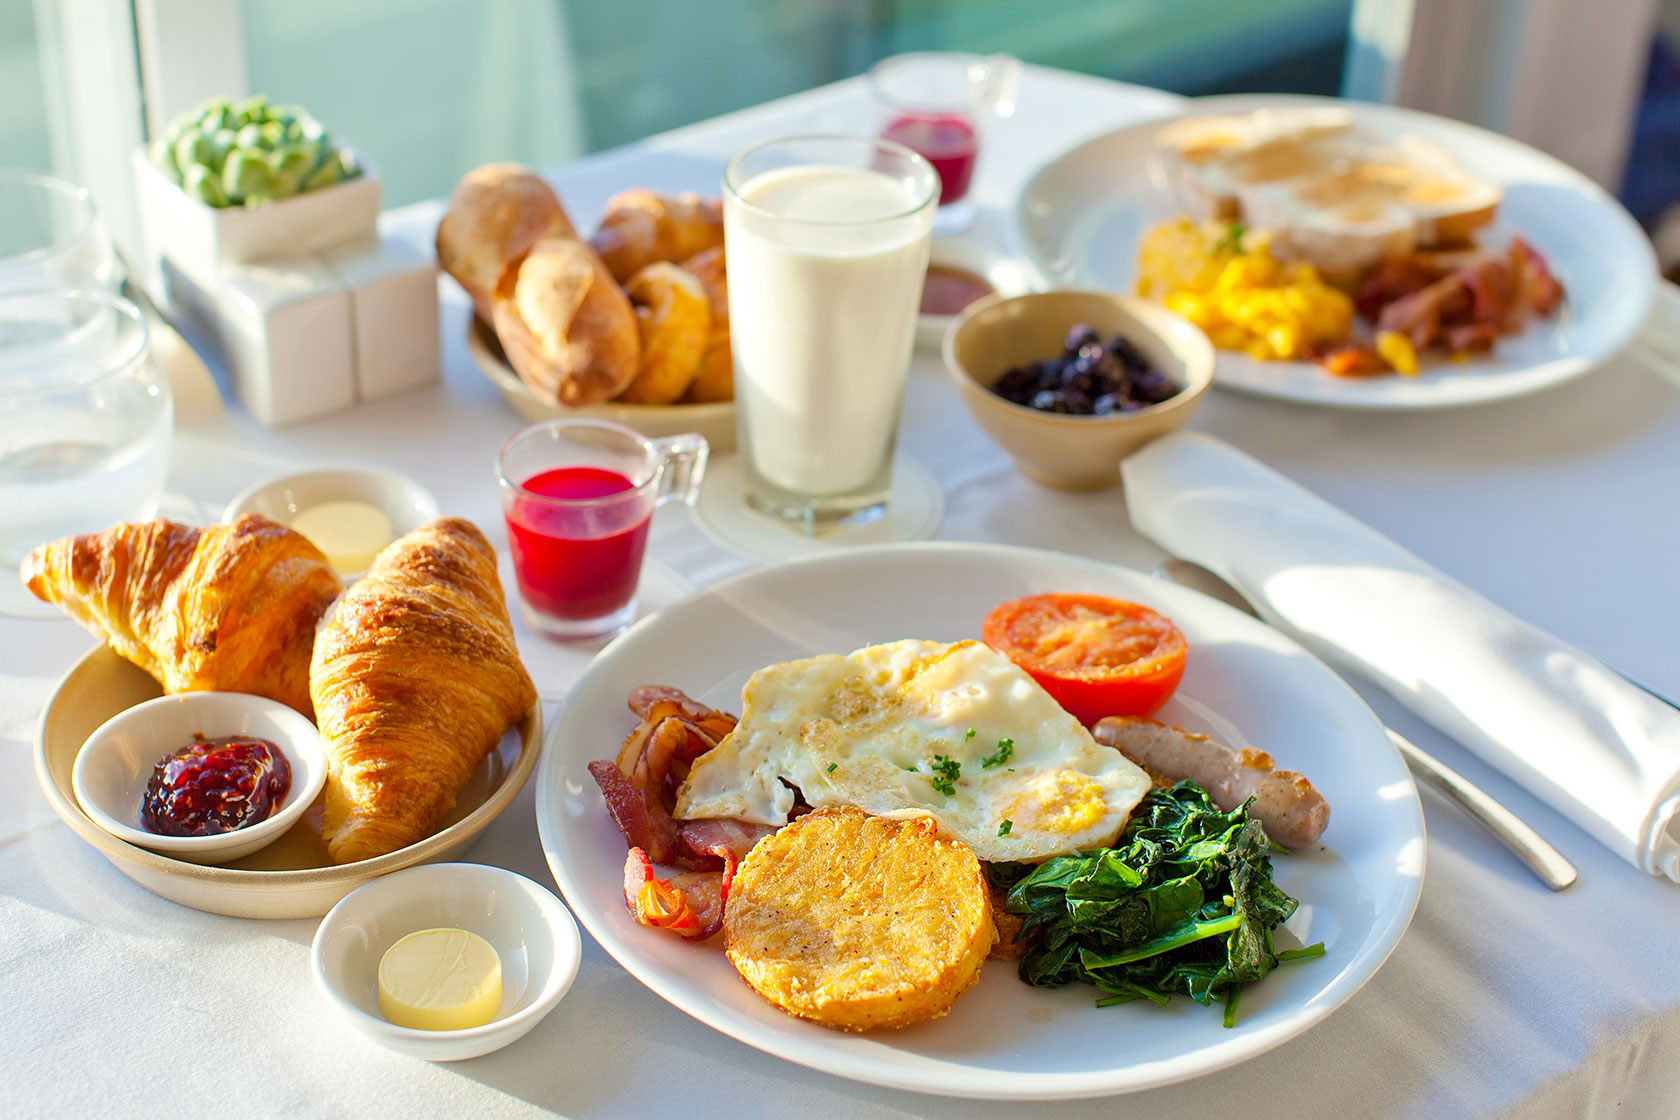 آیا صبحانه واقعا مهمترین وعده غذایی است؟